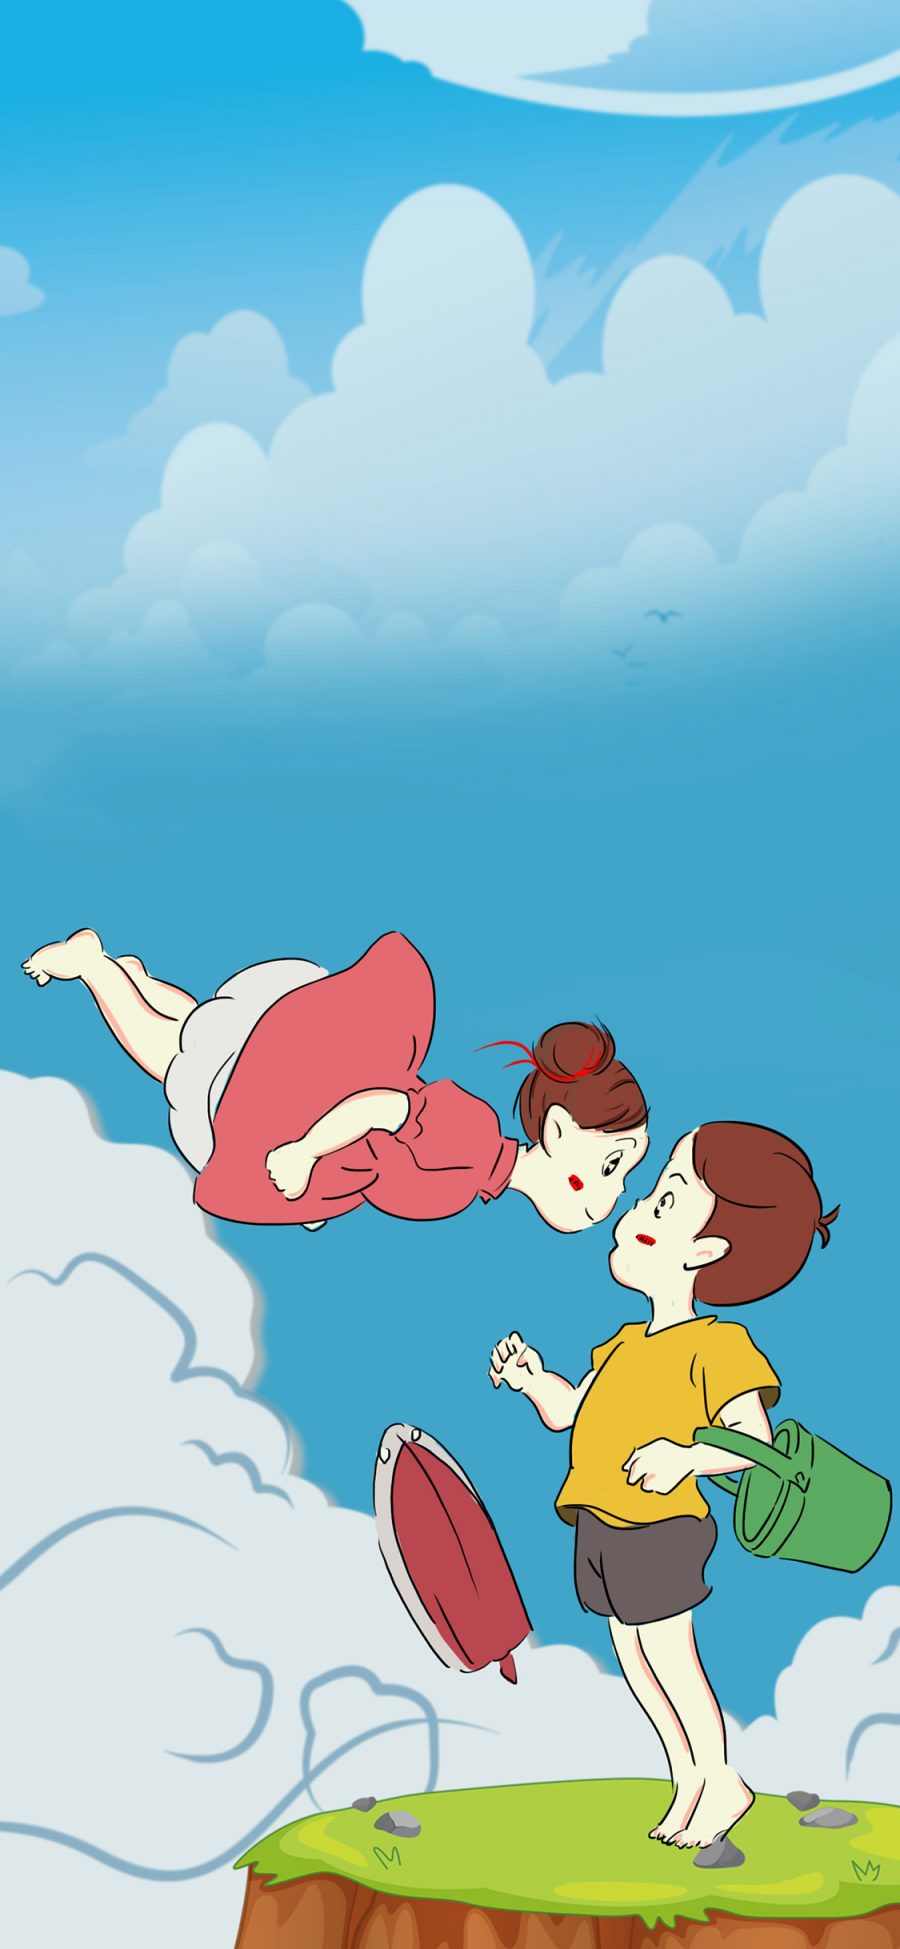 [2436×1125]手绘版 悬崖上的金鱼姬 情侣 苹果手机动漫壁纸图片